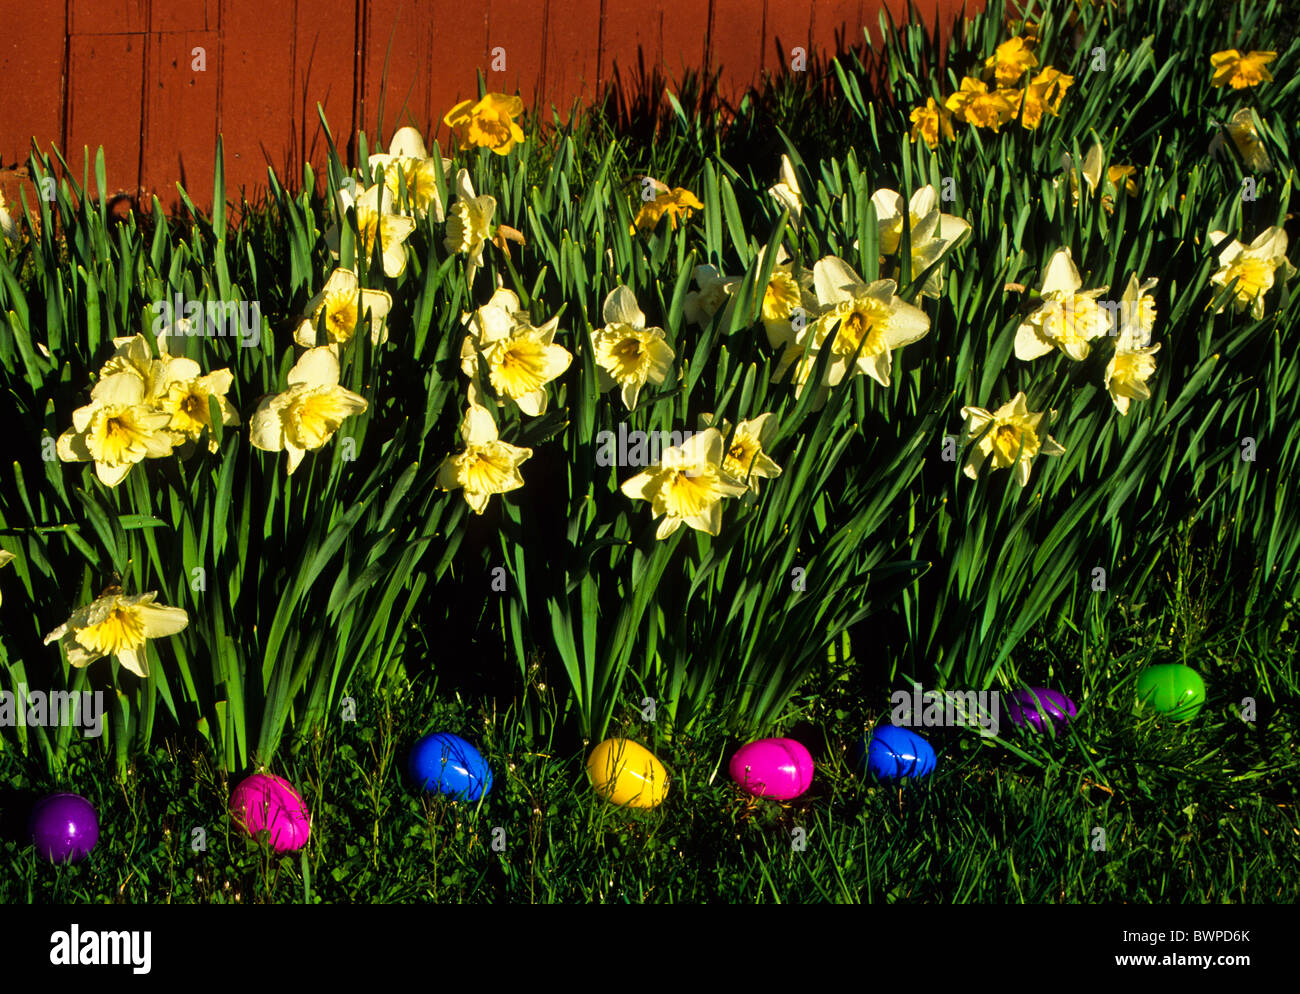 Bunte Nahaufnahme Garten mehrjährige Grenze, Ostereier, Frühling Daffodil, Narzisse gegen eine kleine rote Scheune in New Jersey, USA, Stillleben Narzissen Blumen Stockfoto